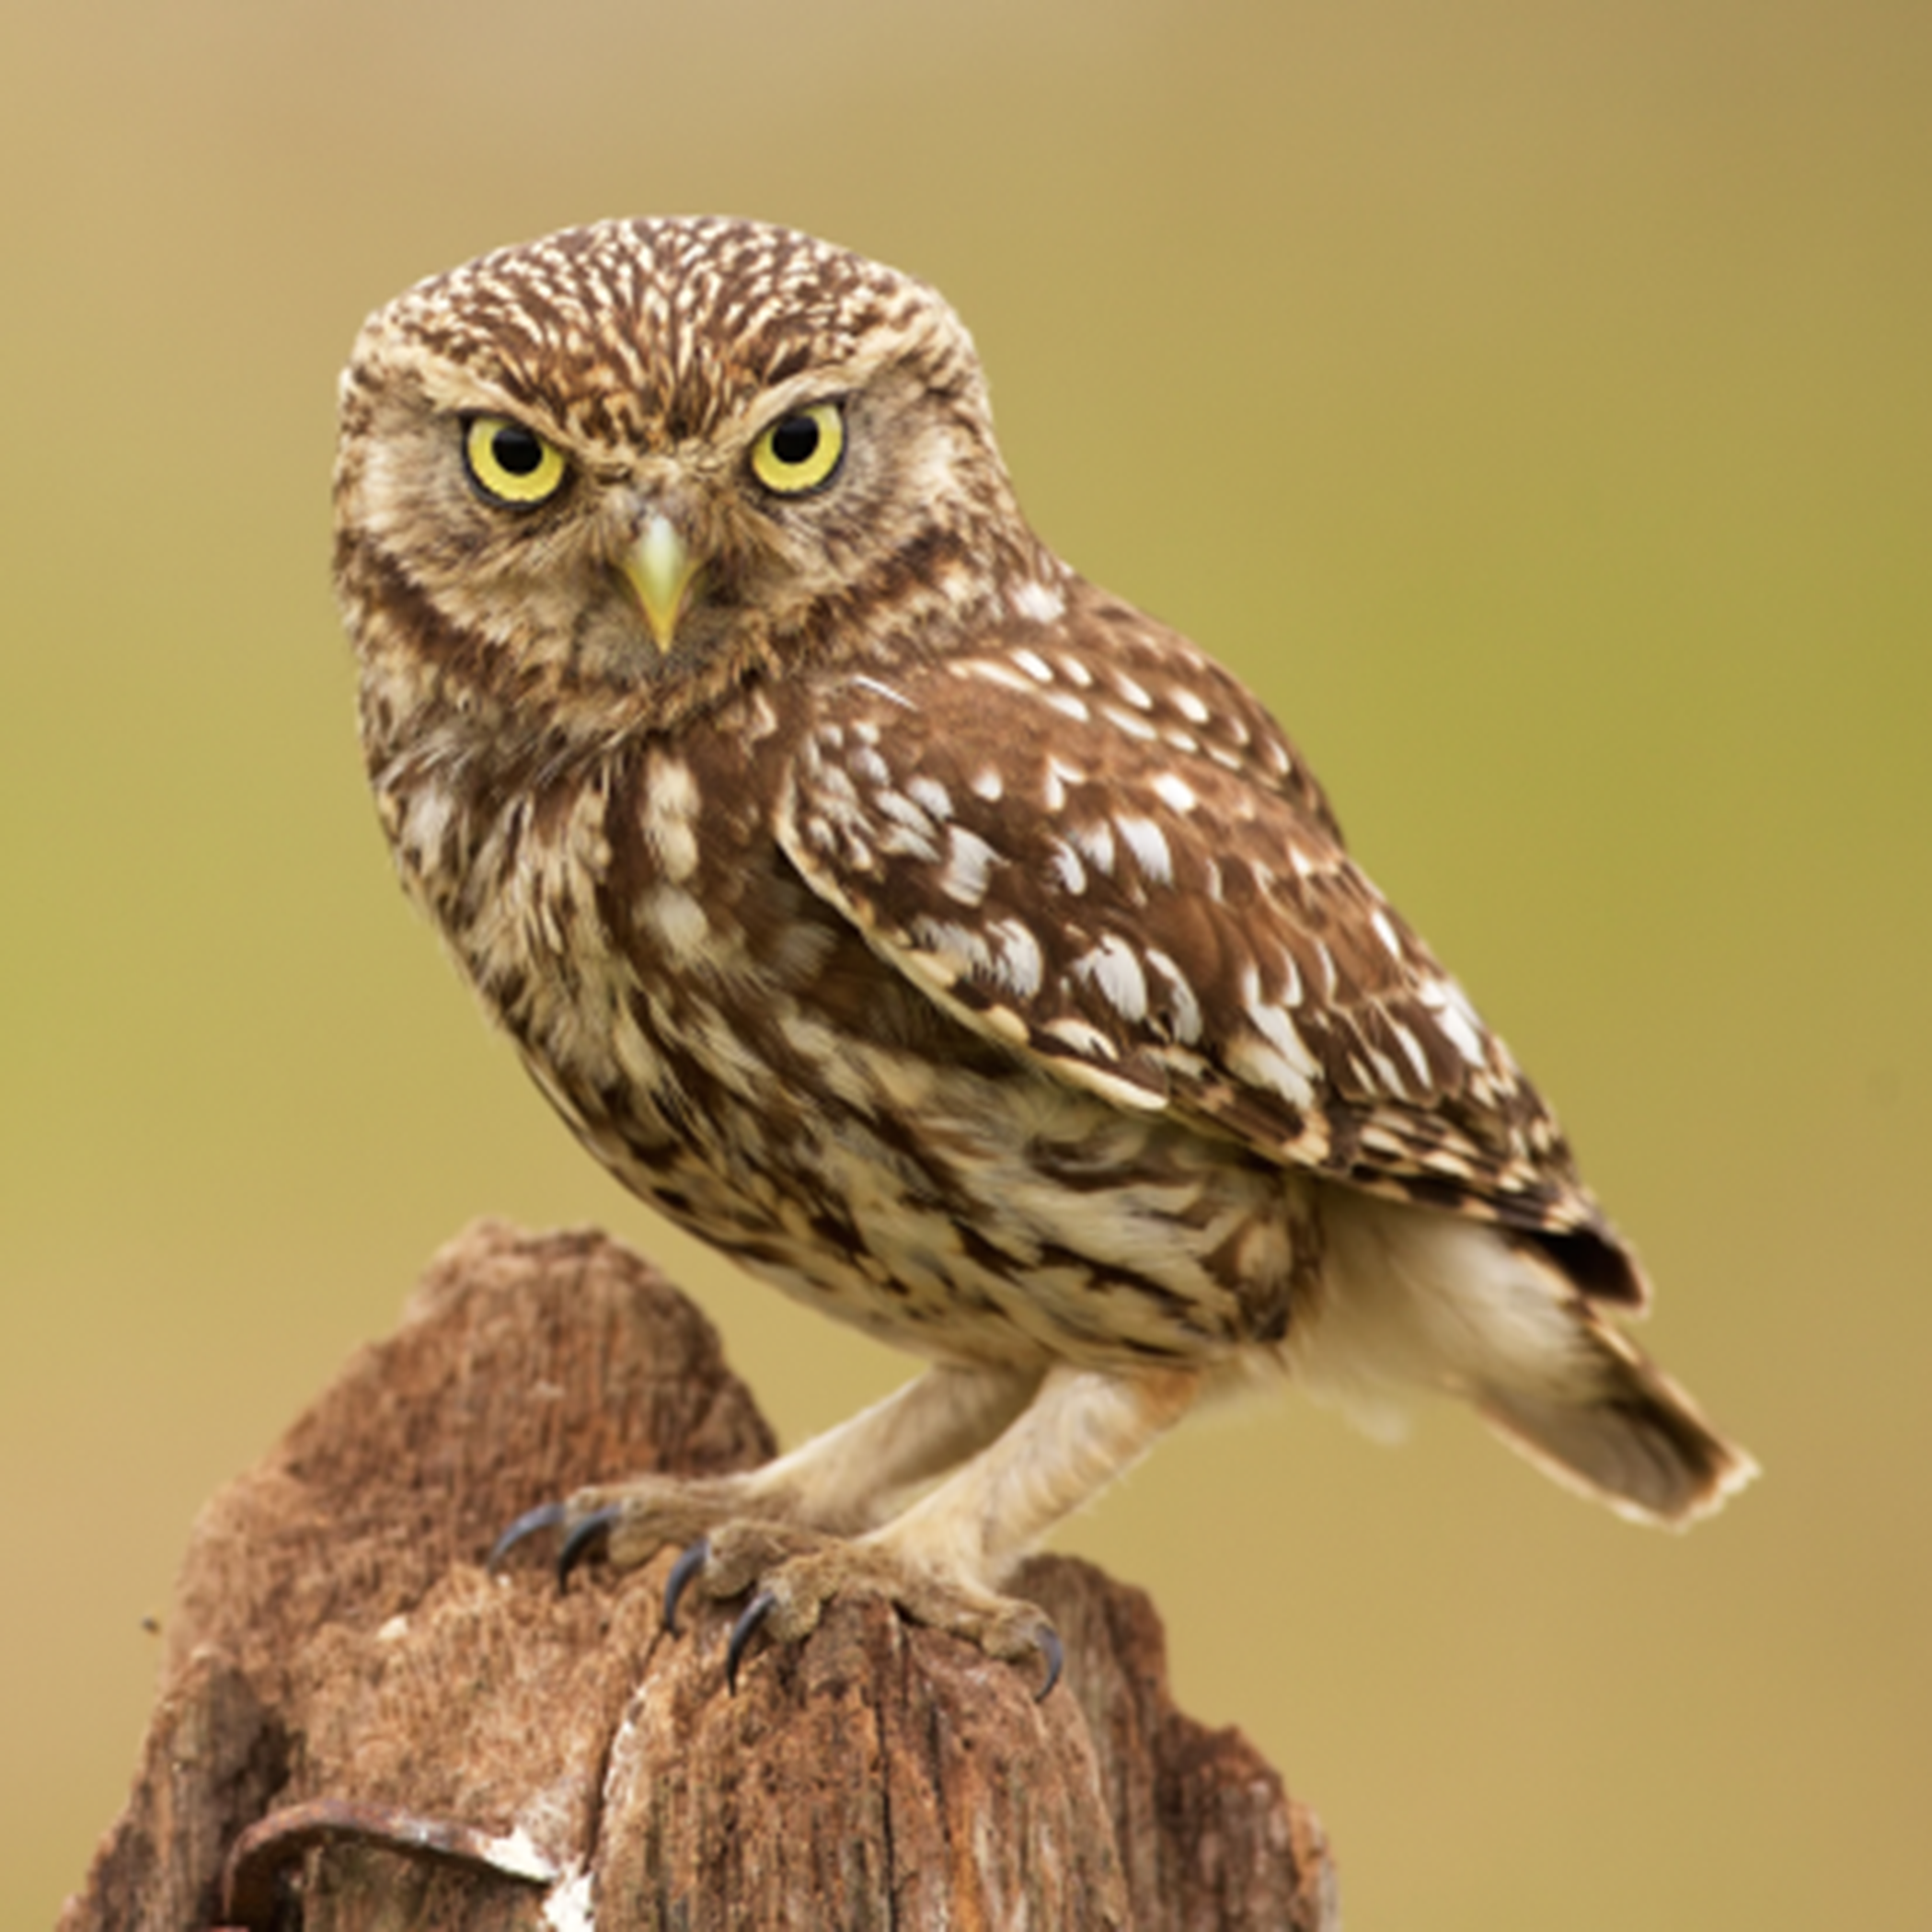 Owl on a tree stump